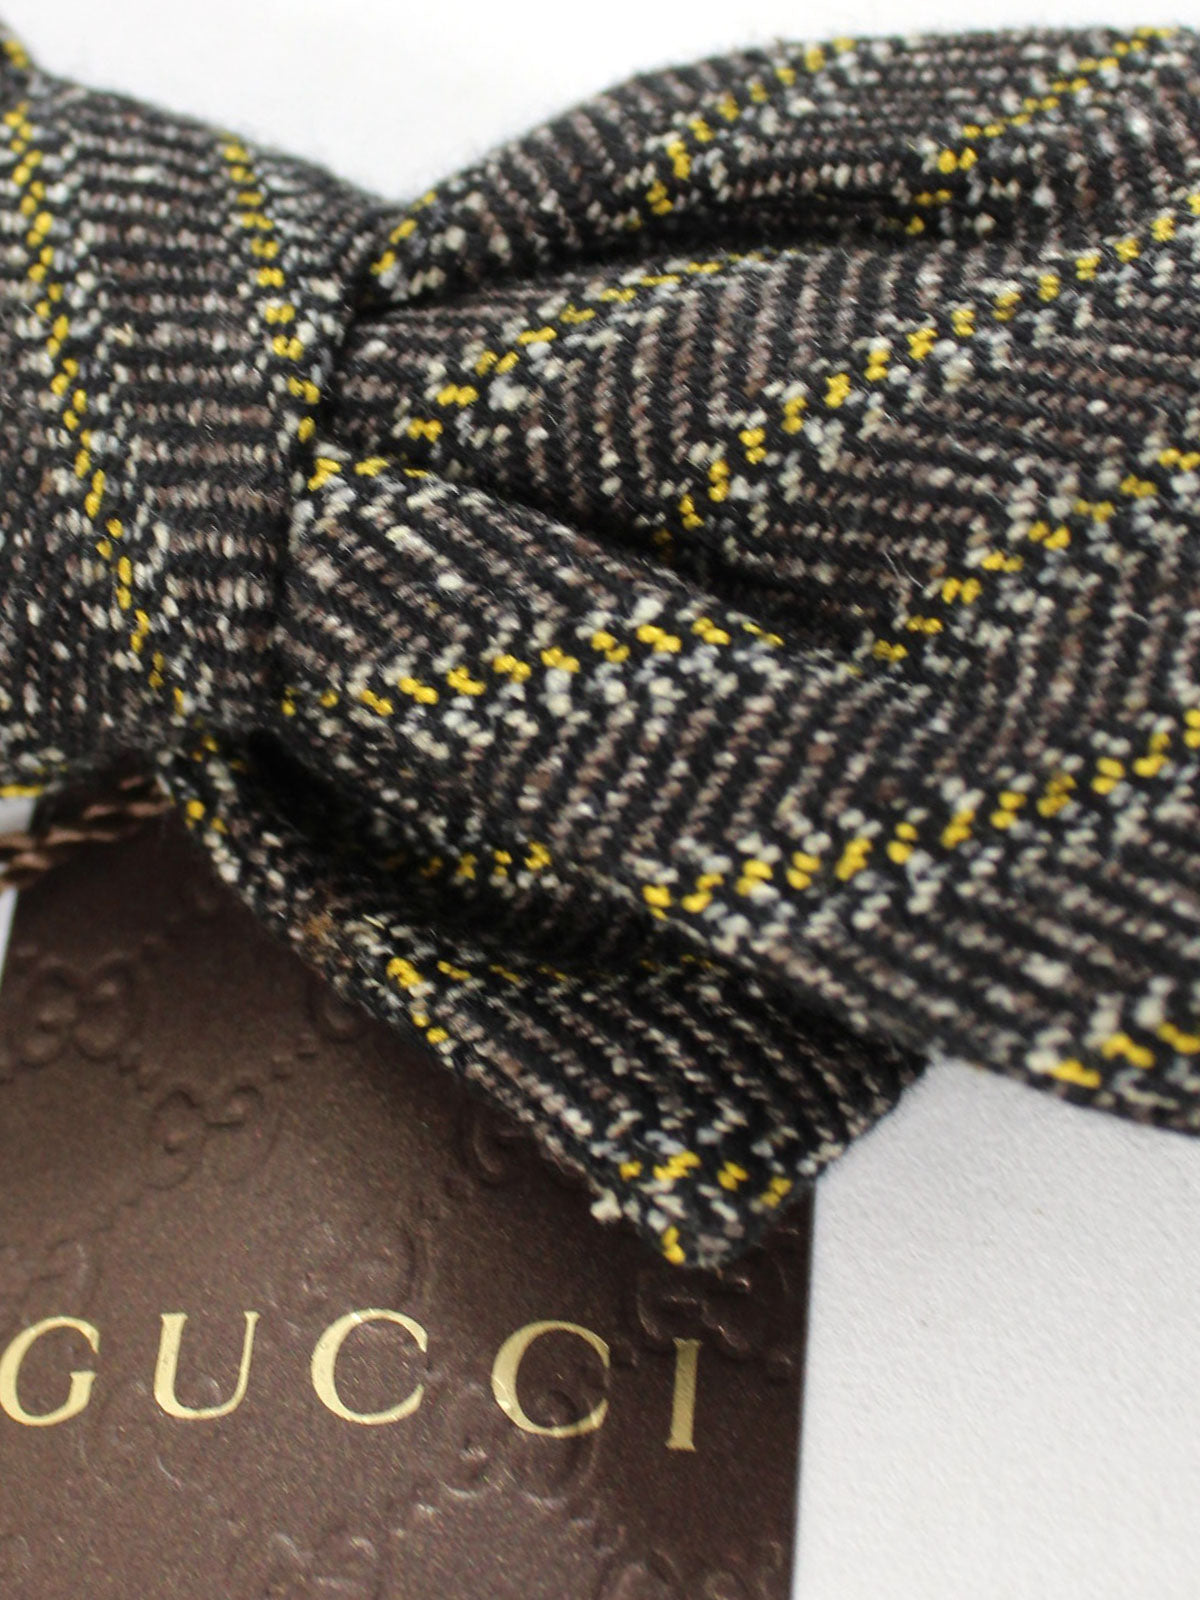 Gucci Stripes Bow Tie